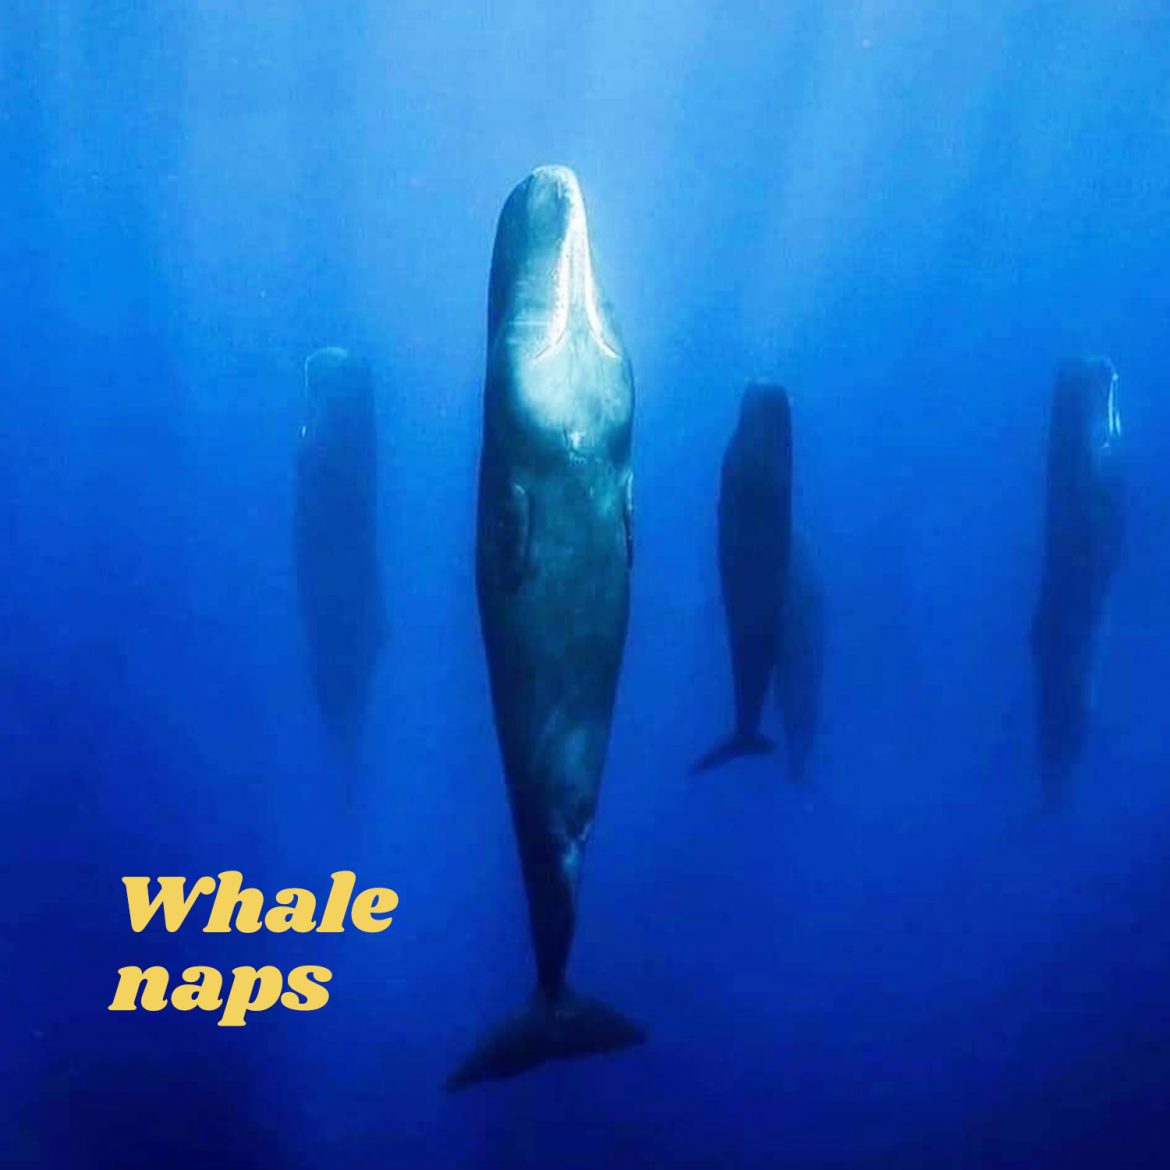 Whale naps